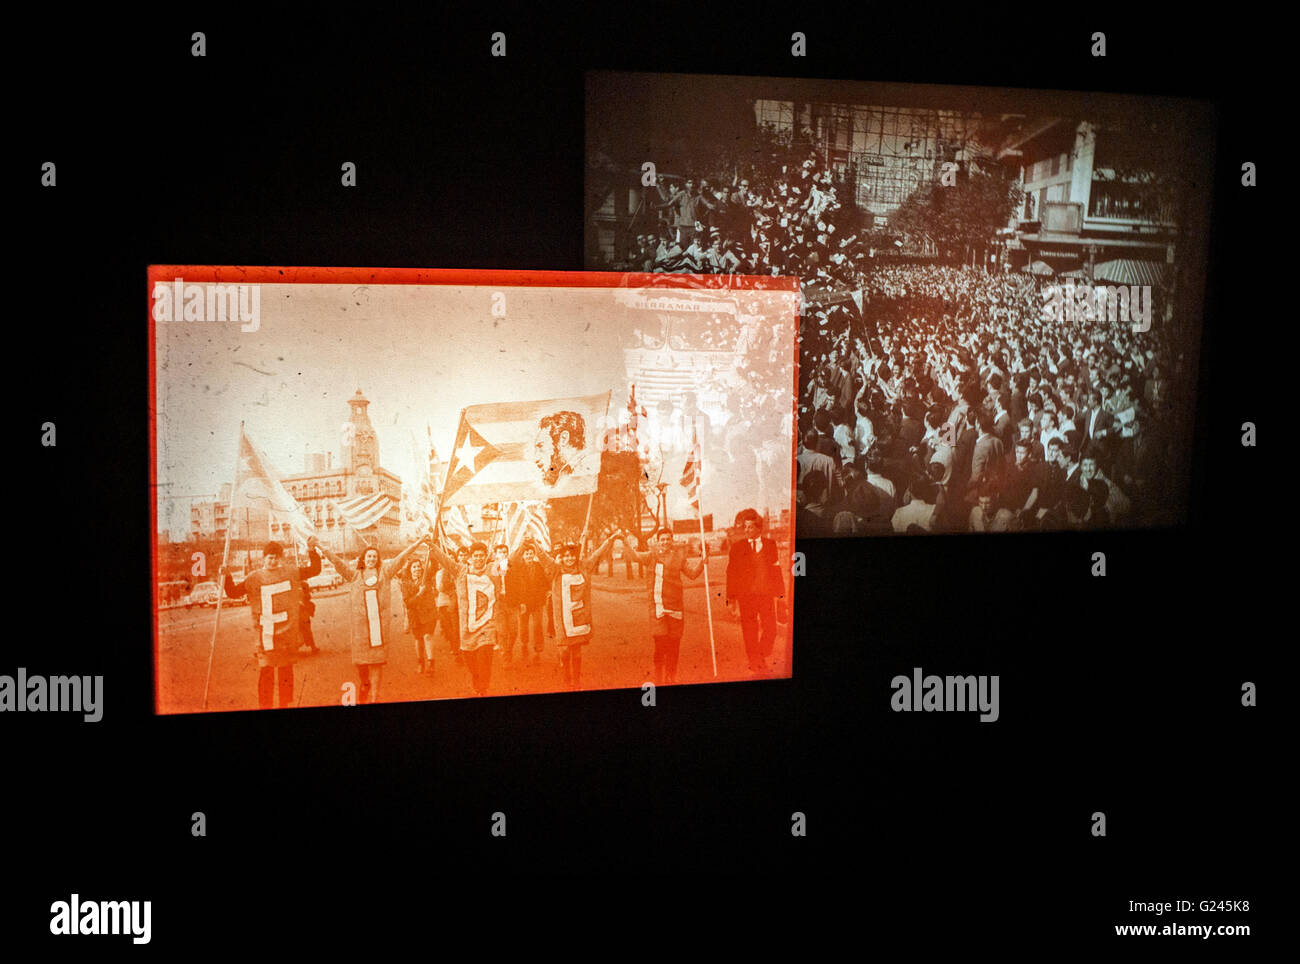 Des projections de diapositives de Saul Leiter images à la Photographers Gallery London diaporamas exposition interactive Banque D'Images